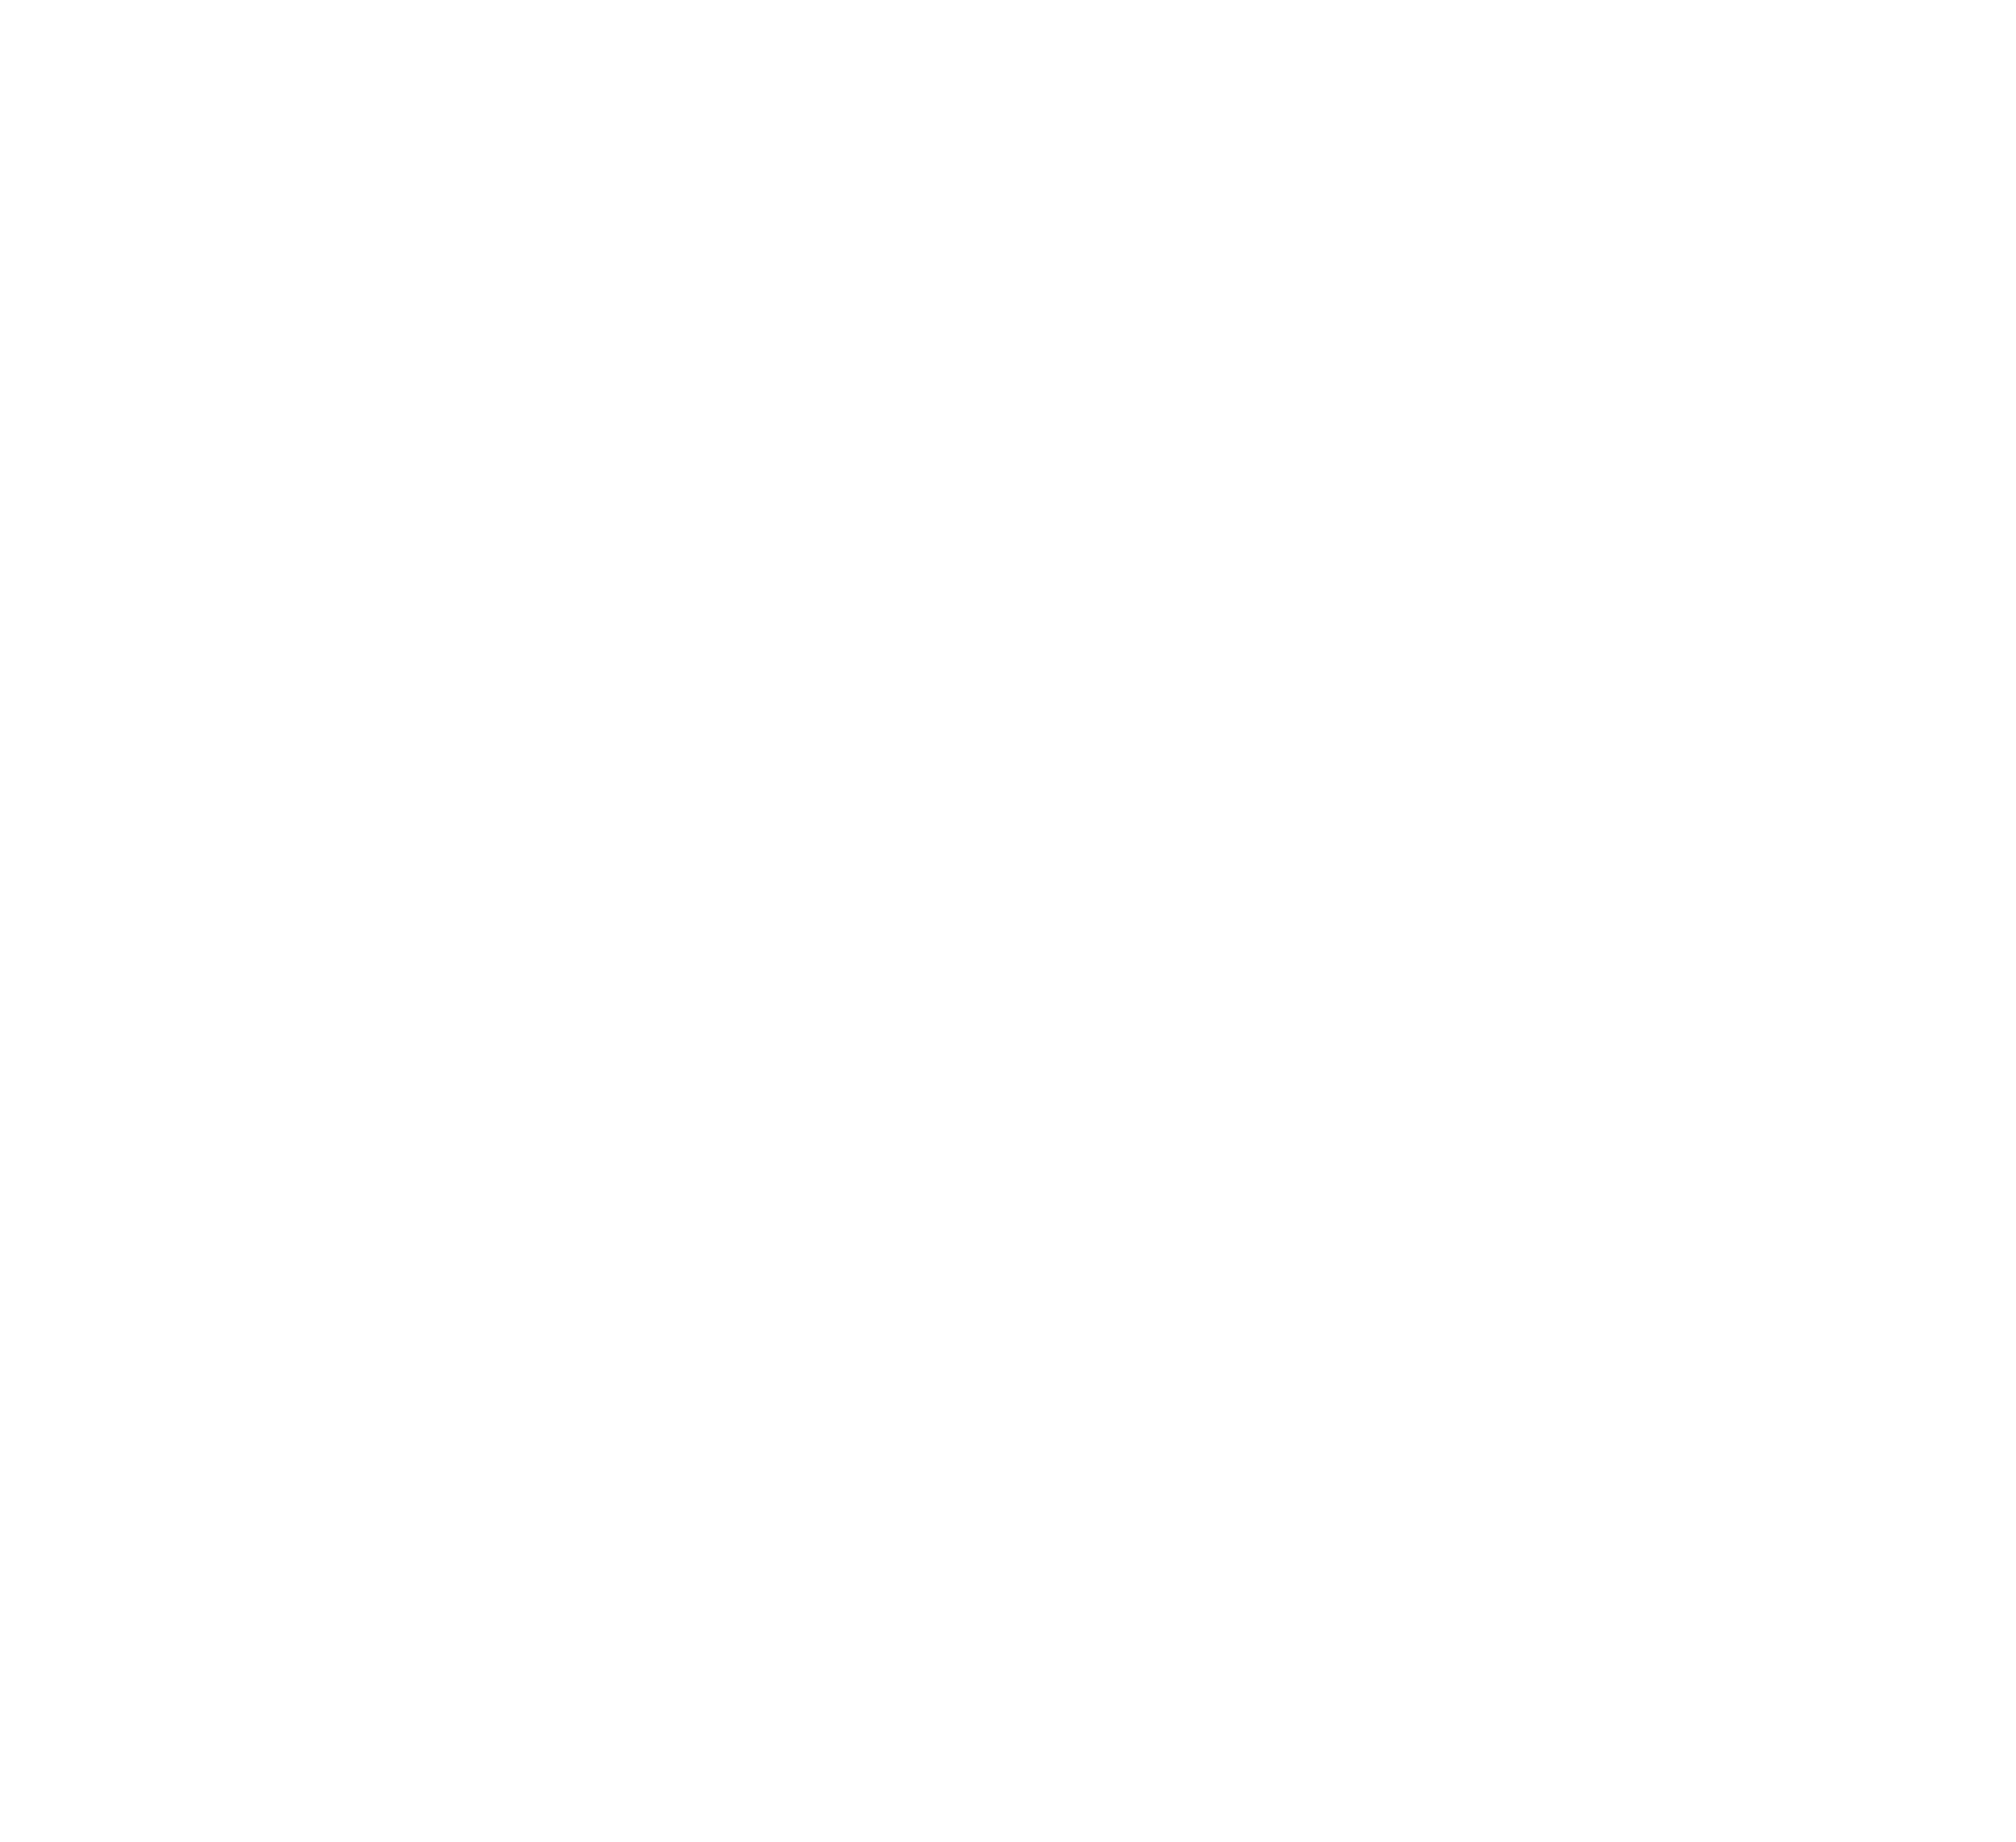 Logo de la norme iso 9001:2015